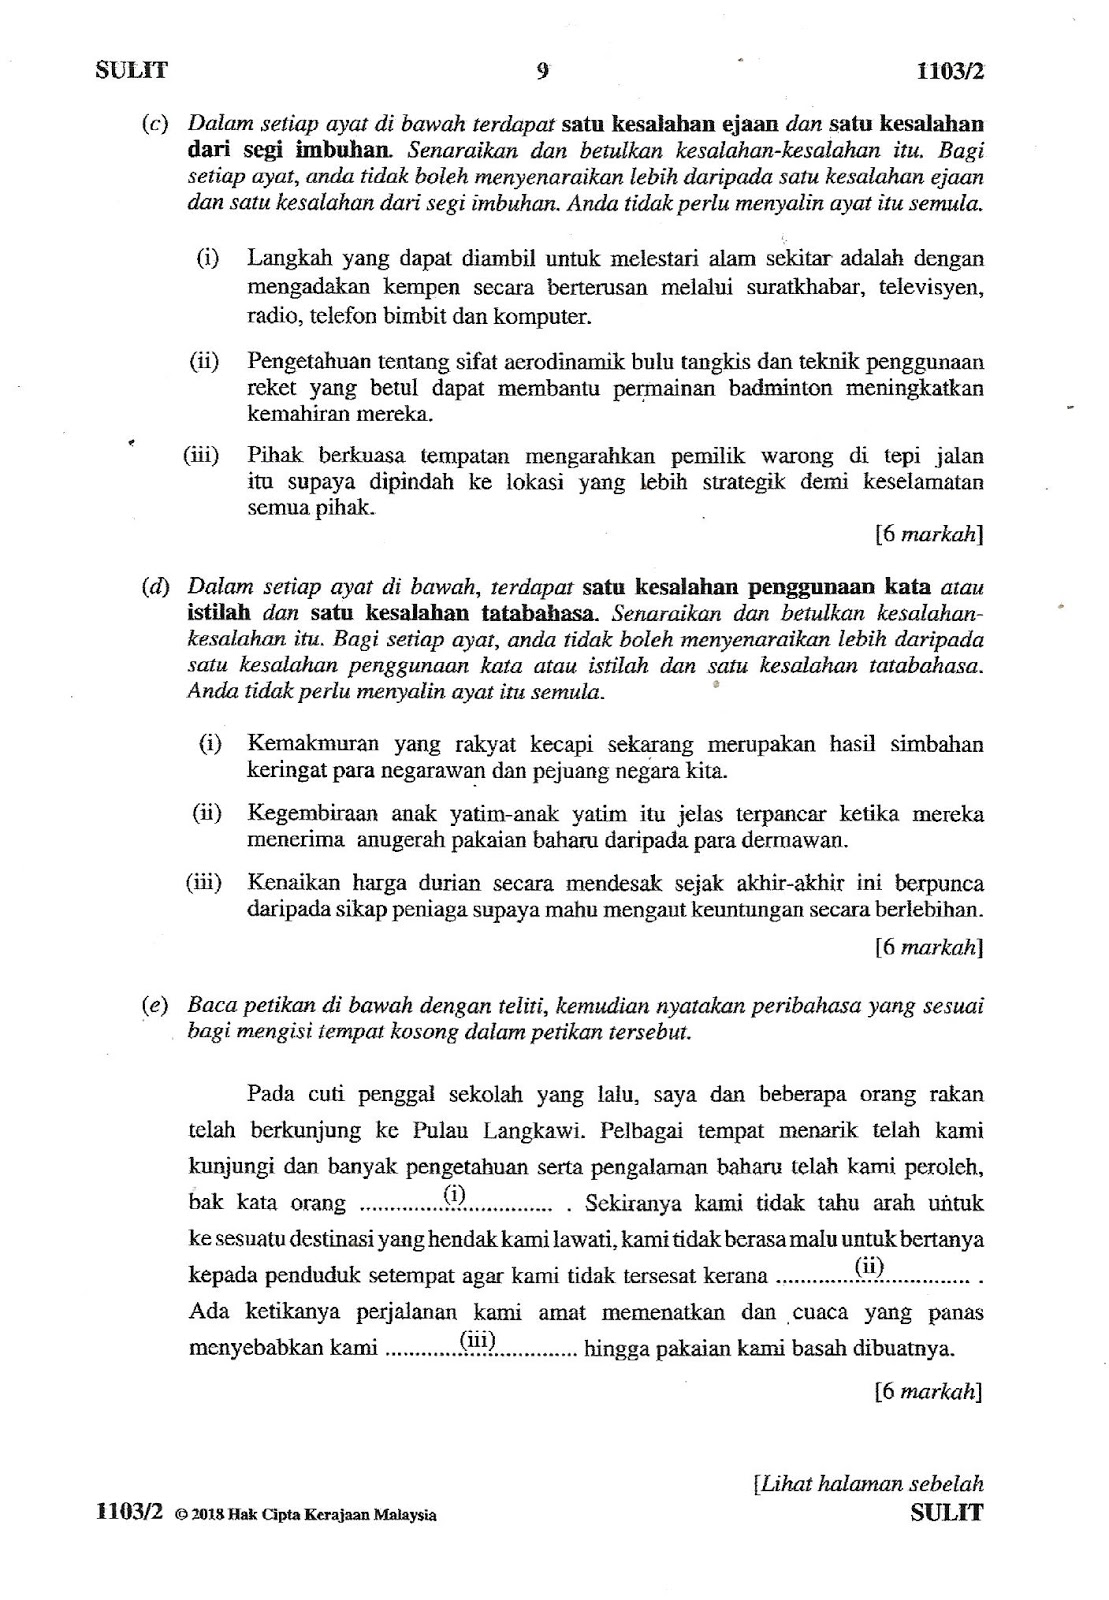 Laman Bahasa Melayu Spm Soalan Latihan Tatabahasa Soalan Tatabahasa 3 A 3 B 3 C 3 D Dan 3 E Sekolah Ganti Sempena Cuti Pru 14 Pada 14 7 2018 Kertas Bahasa Melayu 2 Ulangan Spm Jun 2018